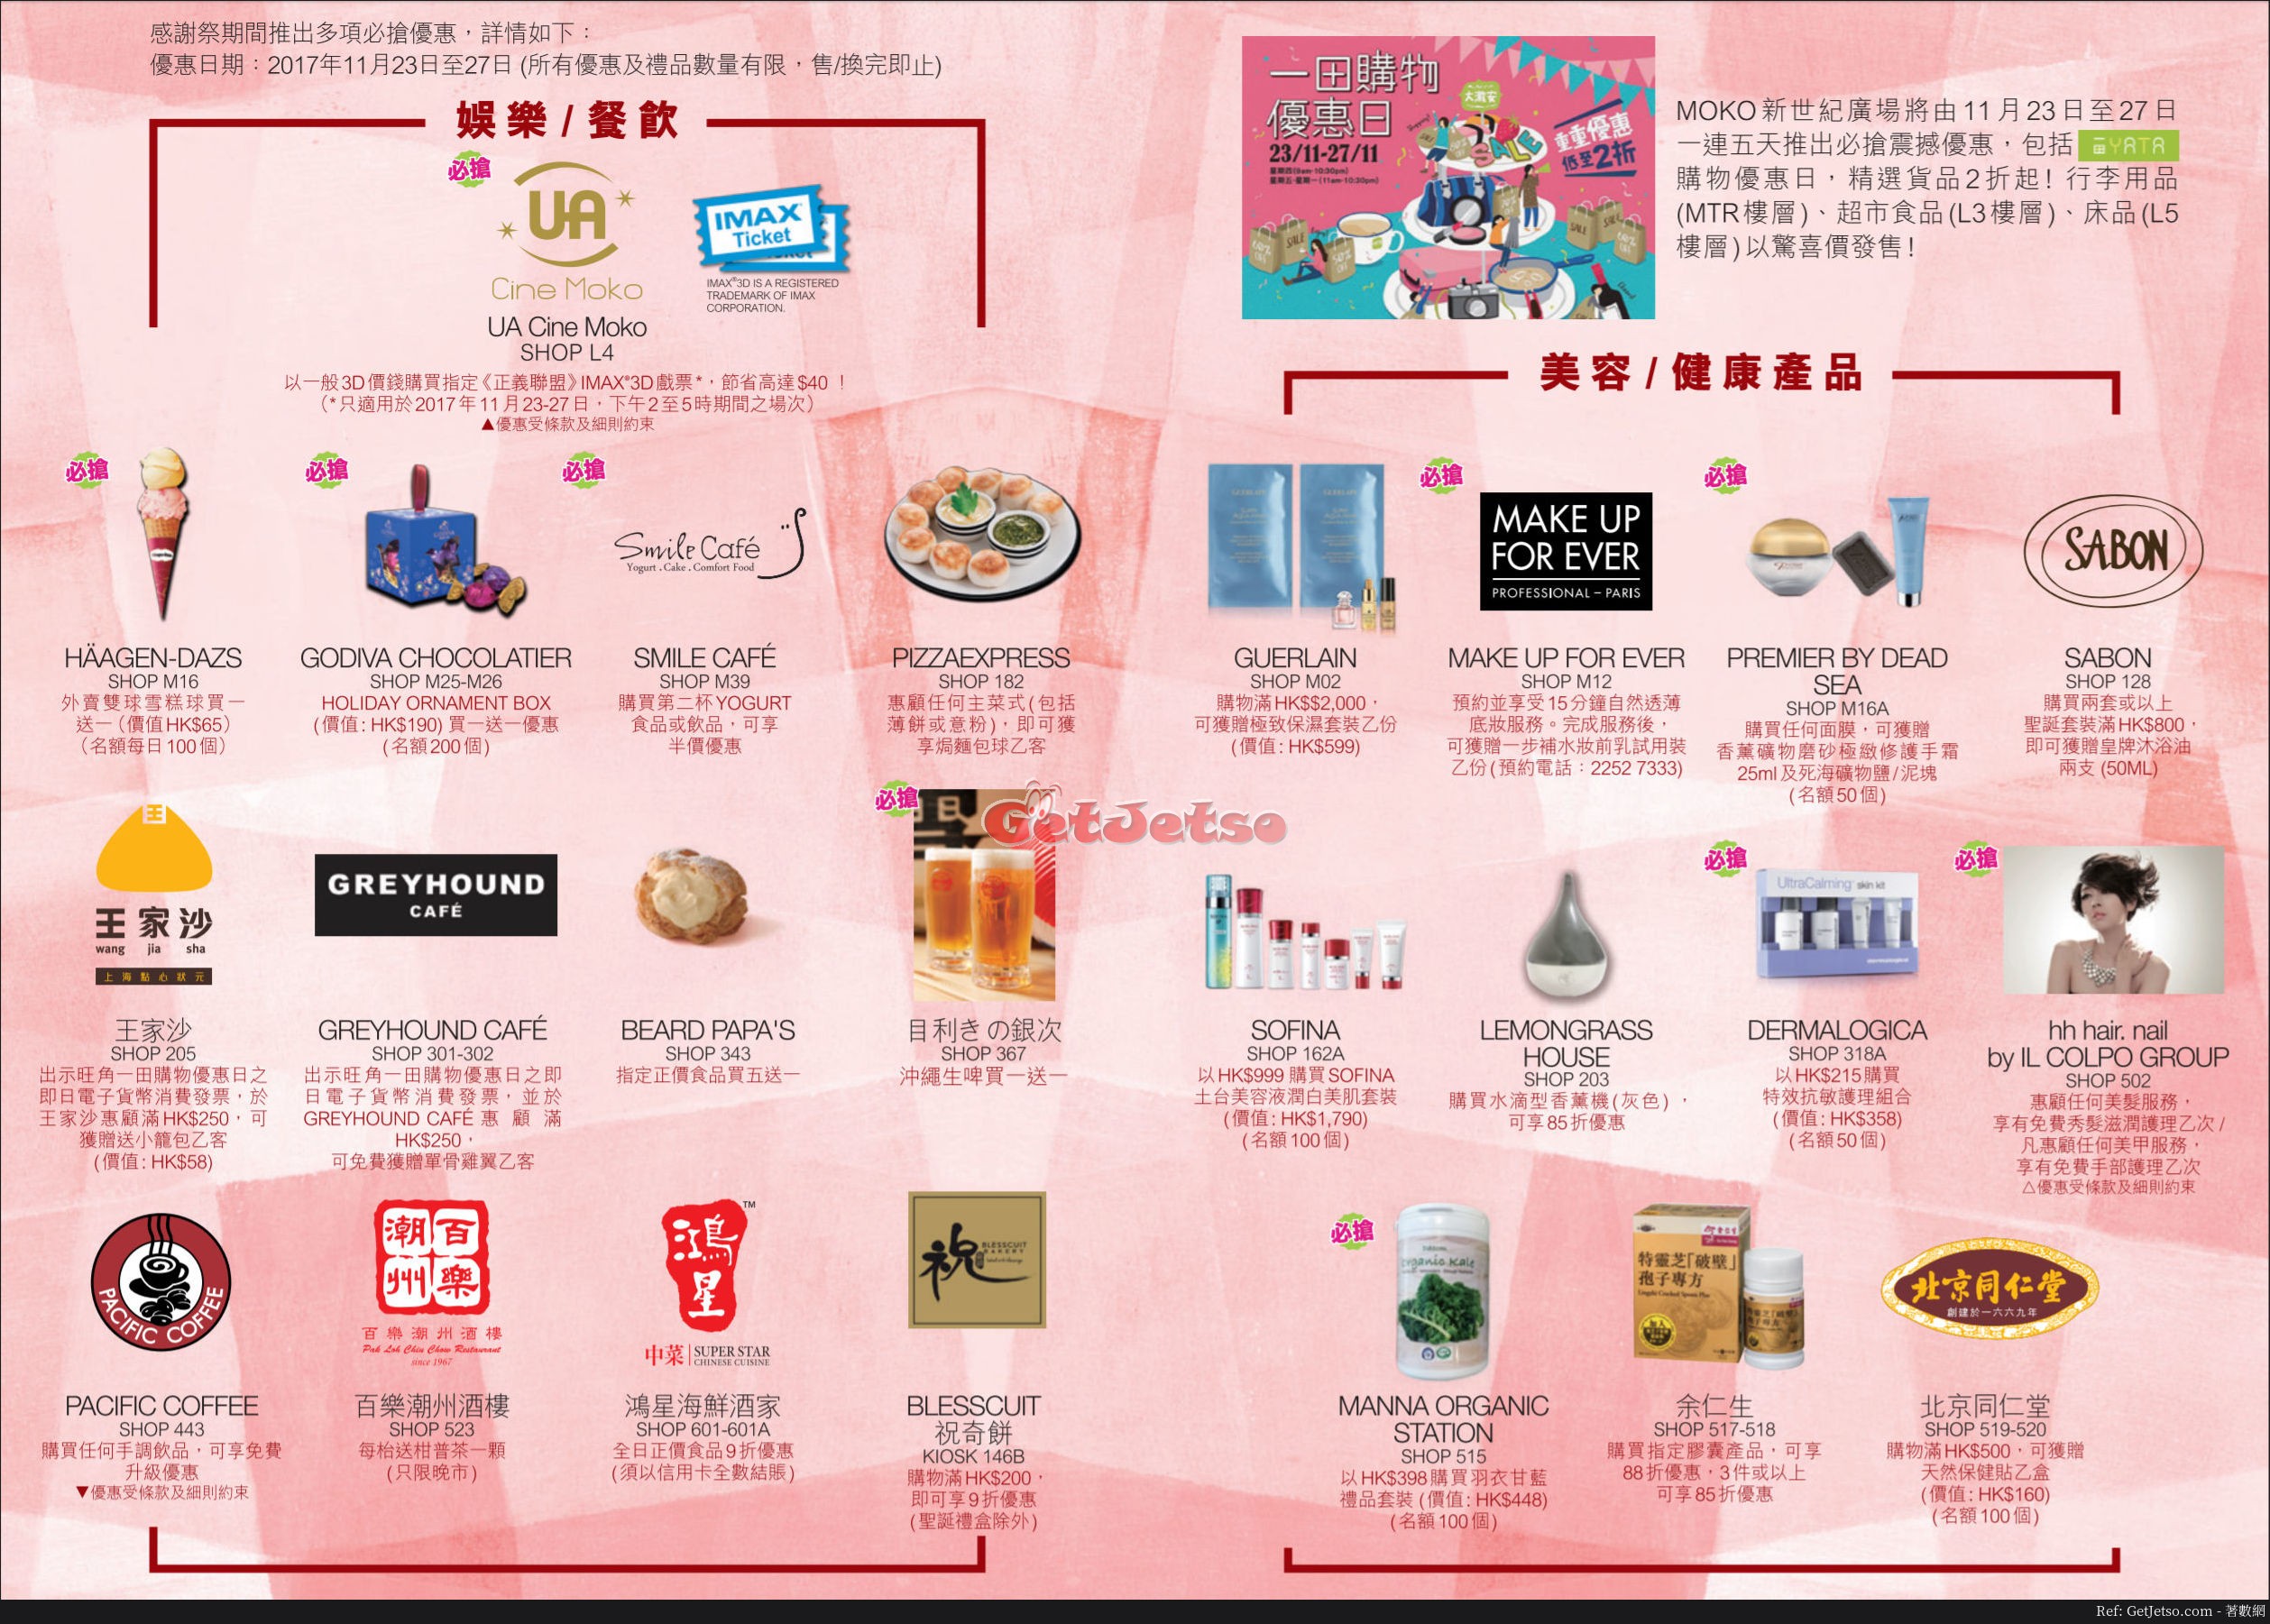 MOKO 新世紀廣場感謝祭購物優惠(17年11月23-27日)圖片2